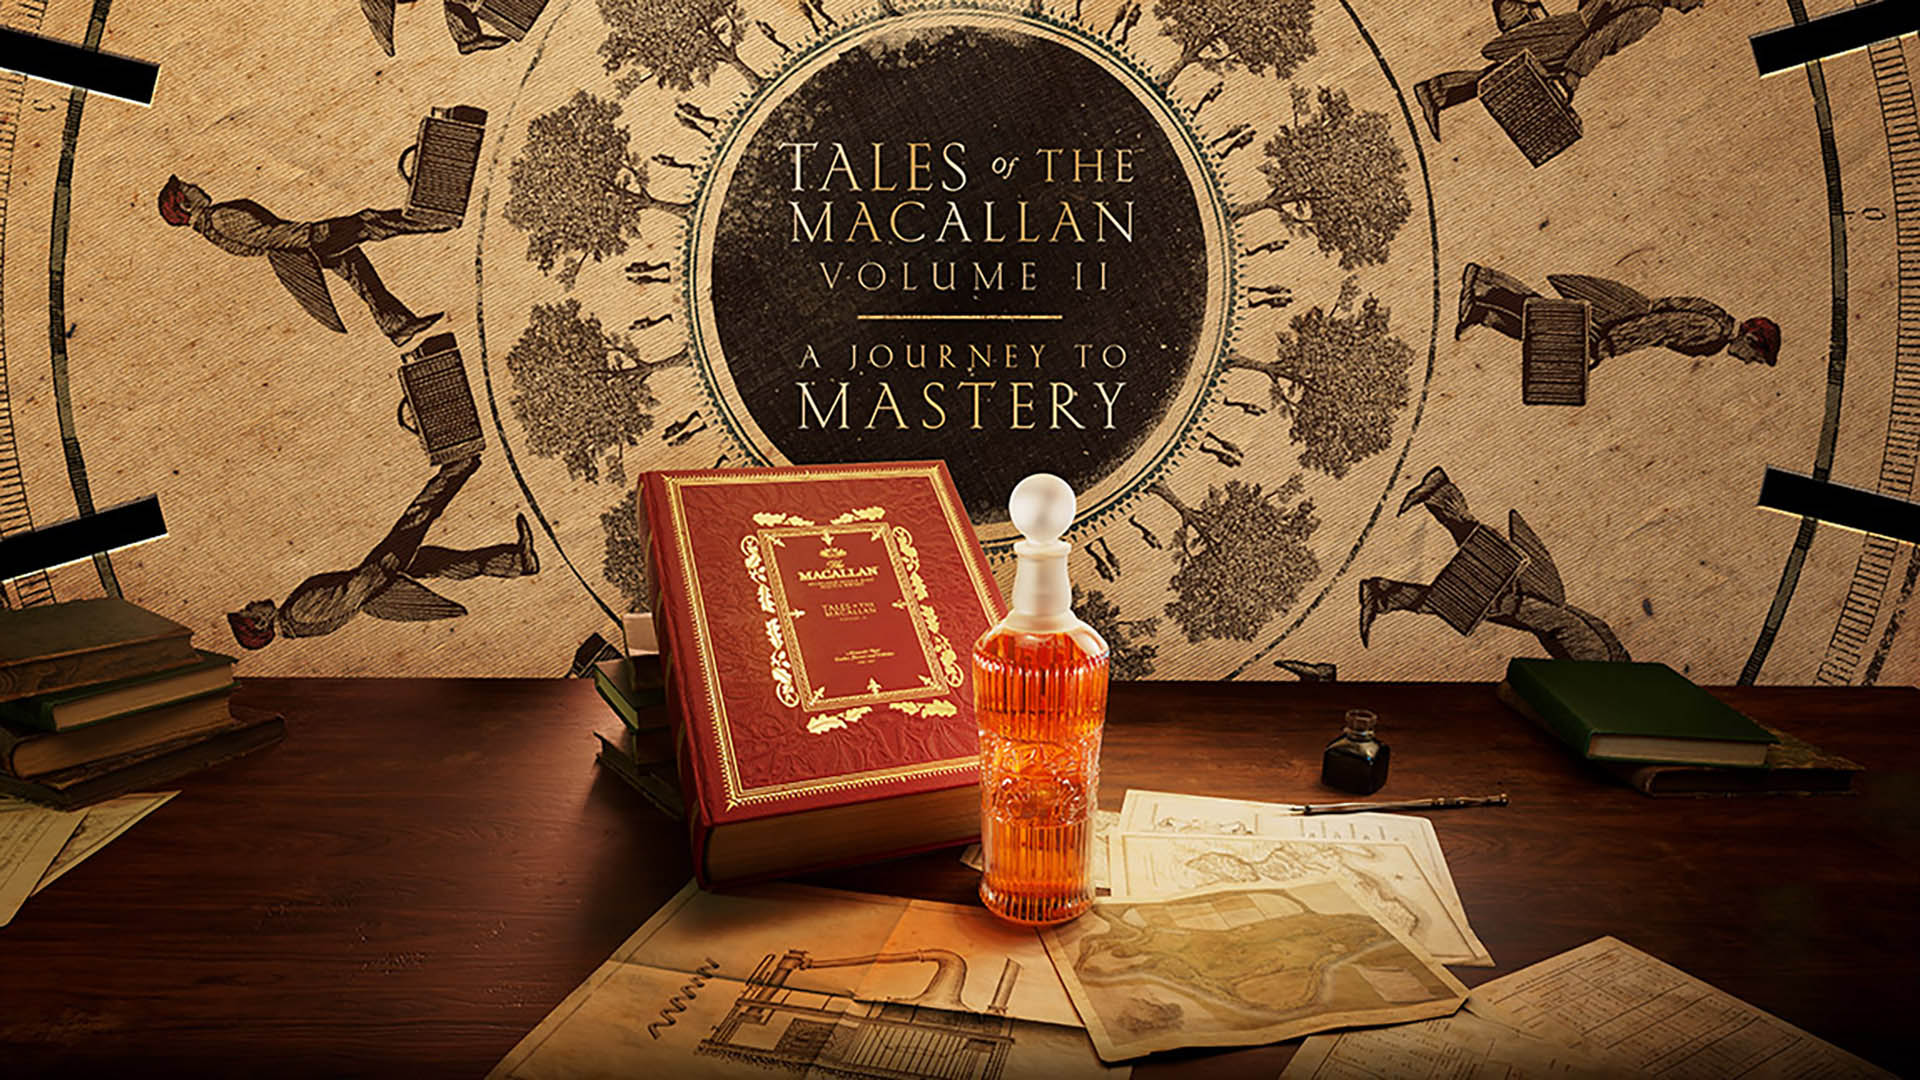 麦卡伦传奇系列第二卷瞩目发布  致敬传奇开创先驱   礼赞匠心制酒传承图片